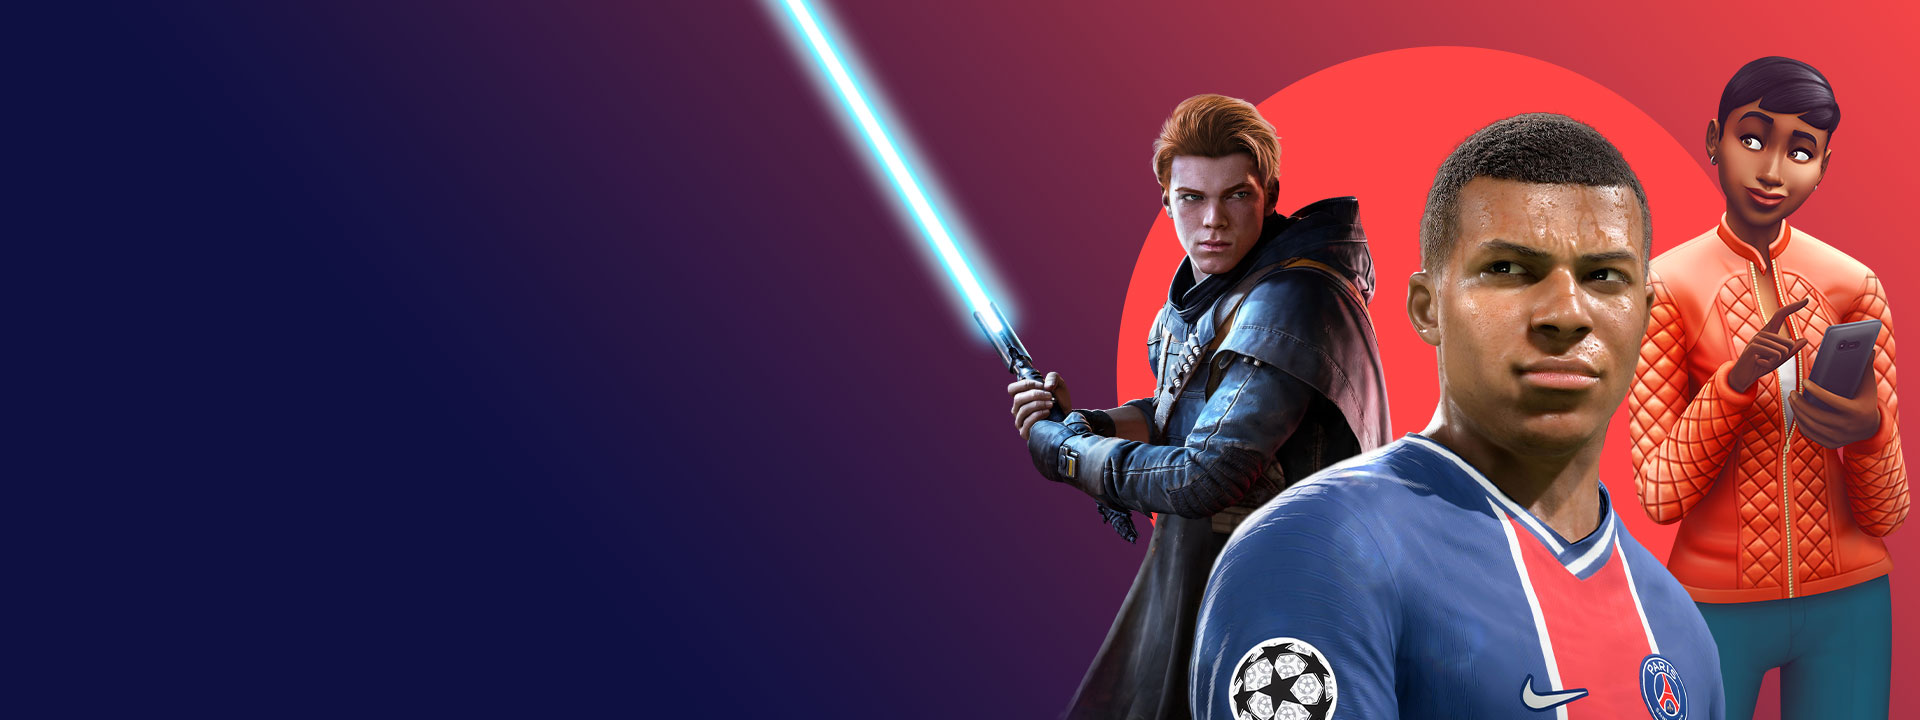 Immagini dei giochi EA inclusi con Xbox Game Pass, tra cui Star Wars Jedi: Fallen Order, FIFA 22 e The Sims 4.